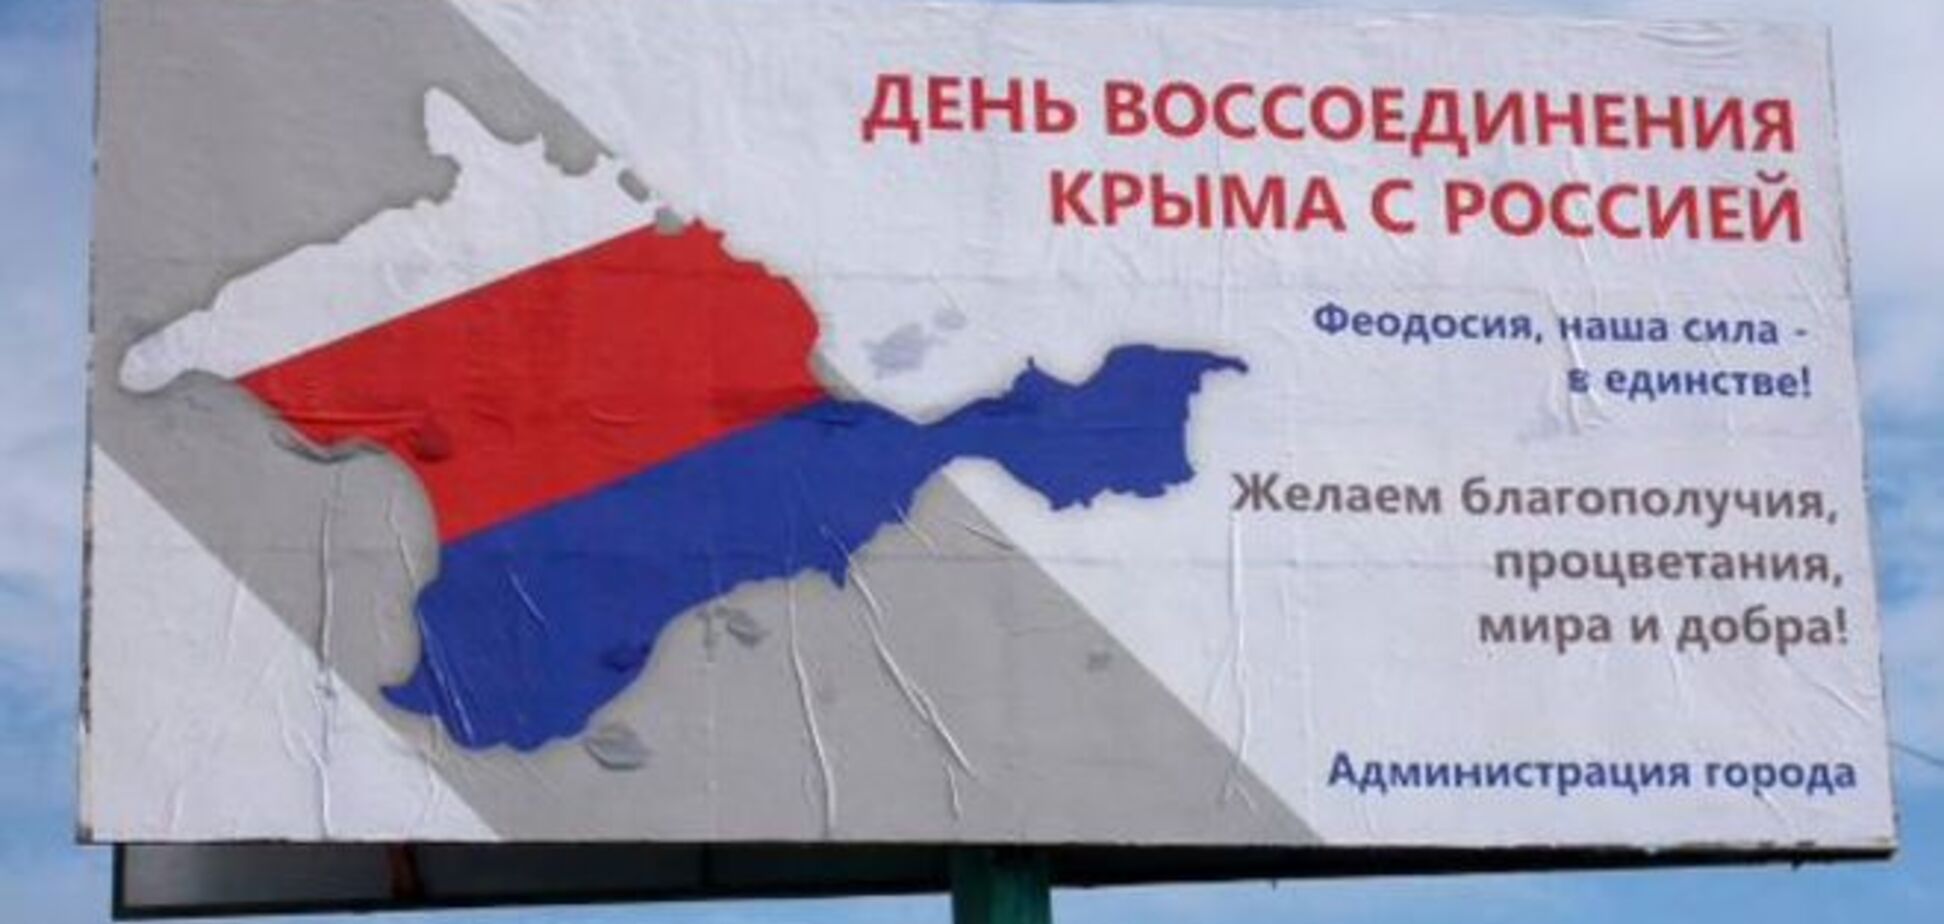 В Крыму появились флаги оккупированного Гитлером государства 